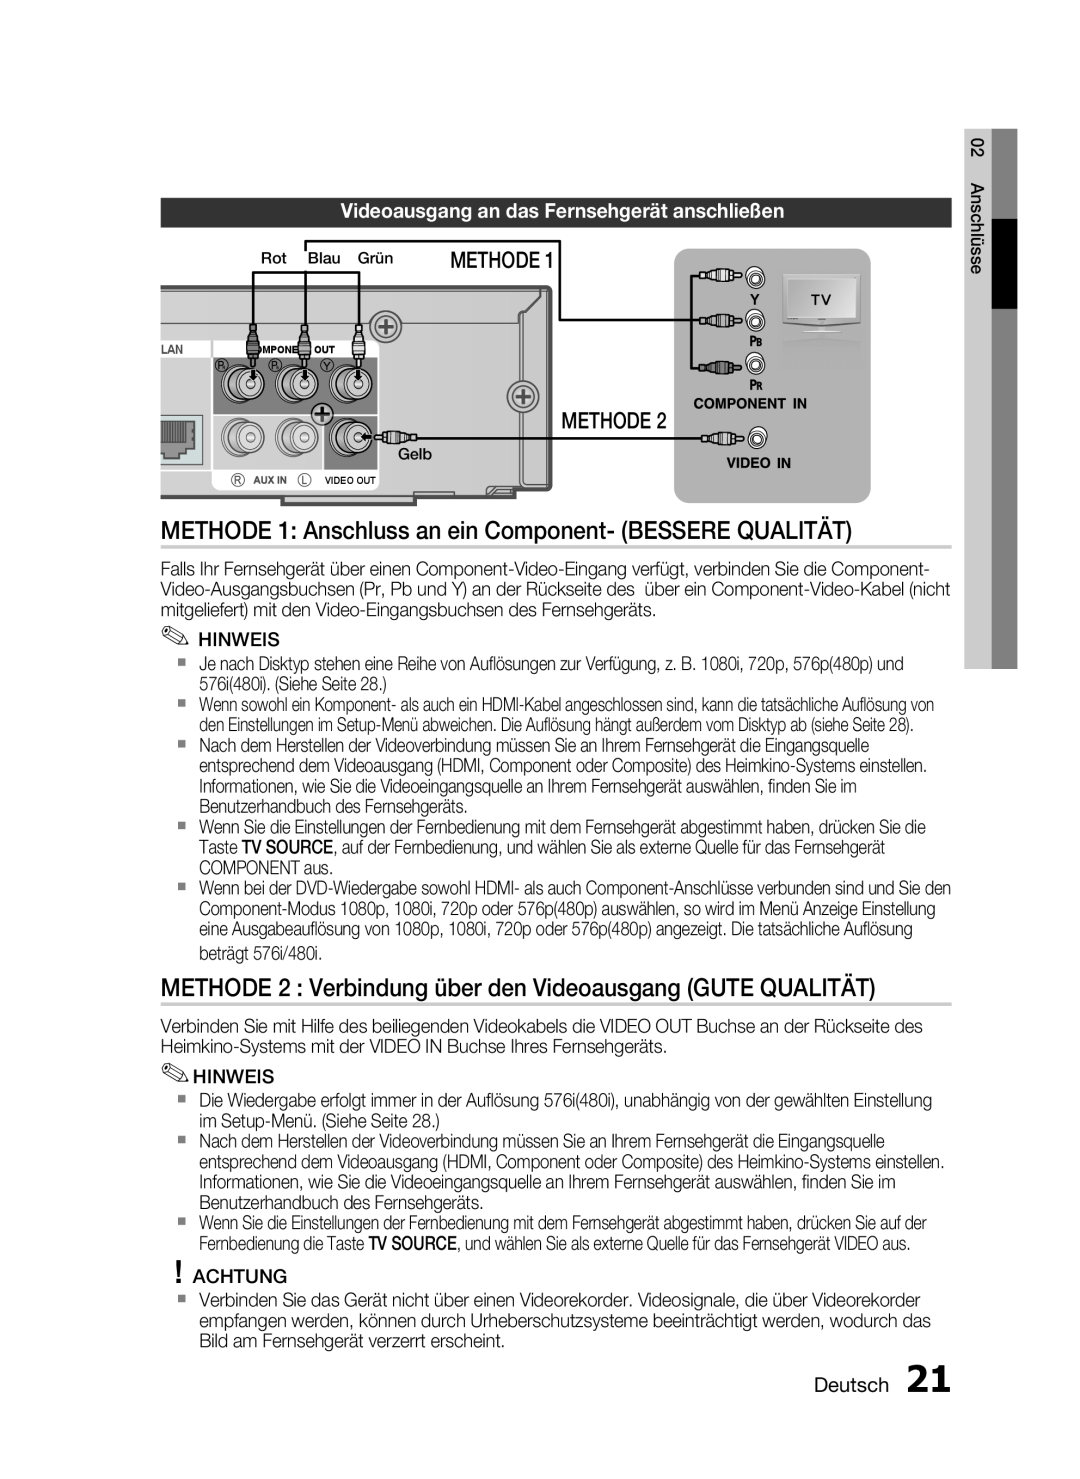 Samsung HT-C6200/XEN, HT-C6200/EDC, HT-C6200/XEF METHODE 1 Anschluss an ein Component- BESSERE QUALITÄT, Methode, Deutsch 